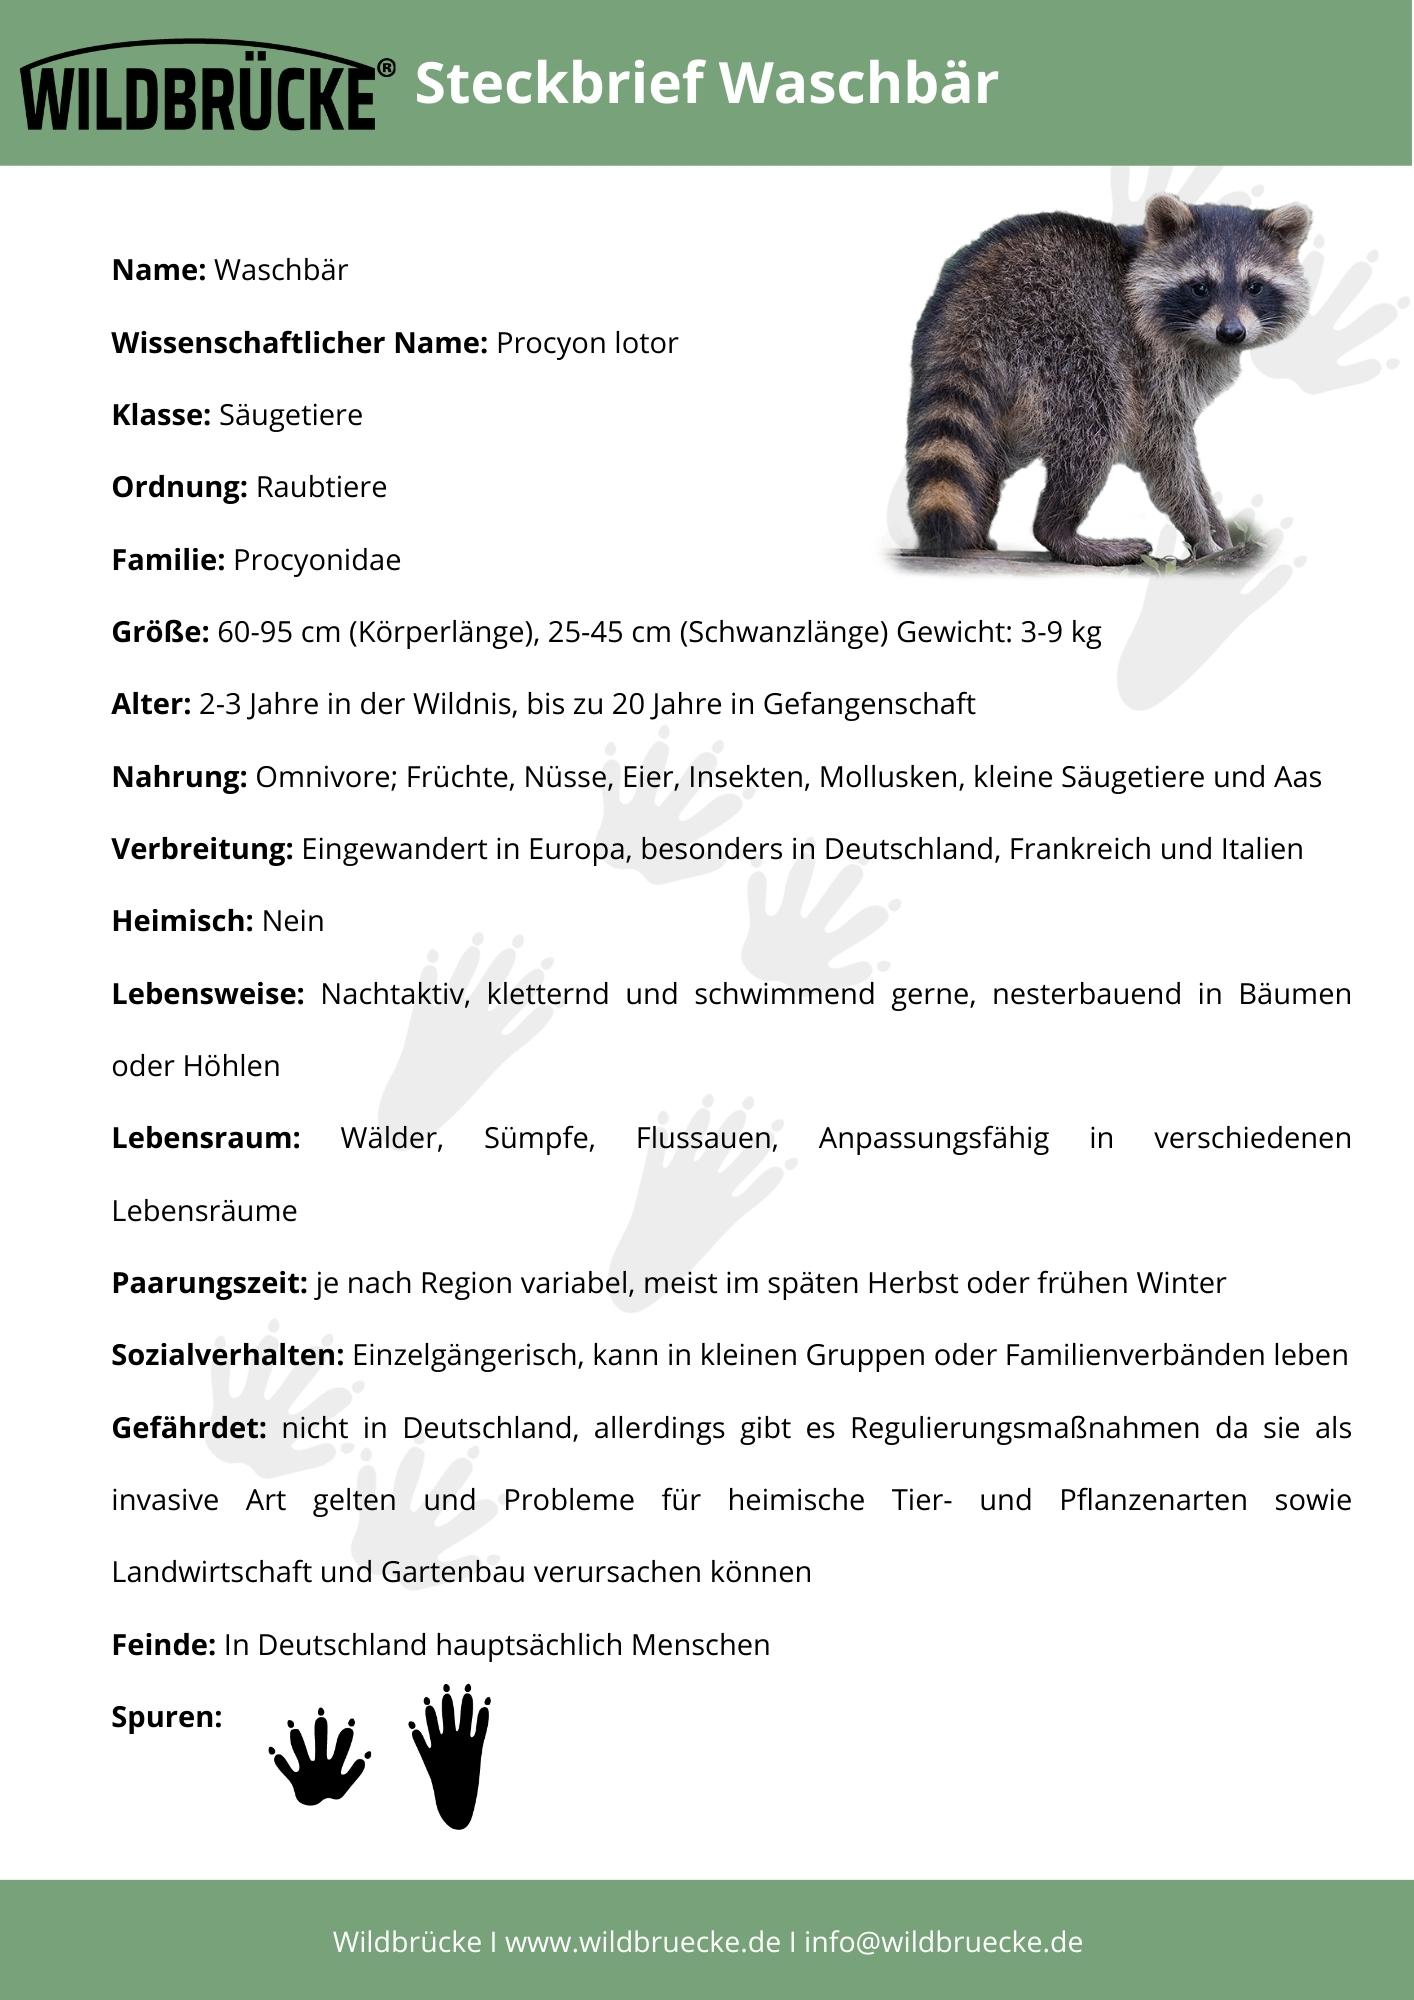 Steckbrief WaschbÃ¤r - Unterrichtsmaterial Wildtiere in Deutschland